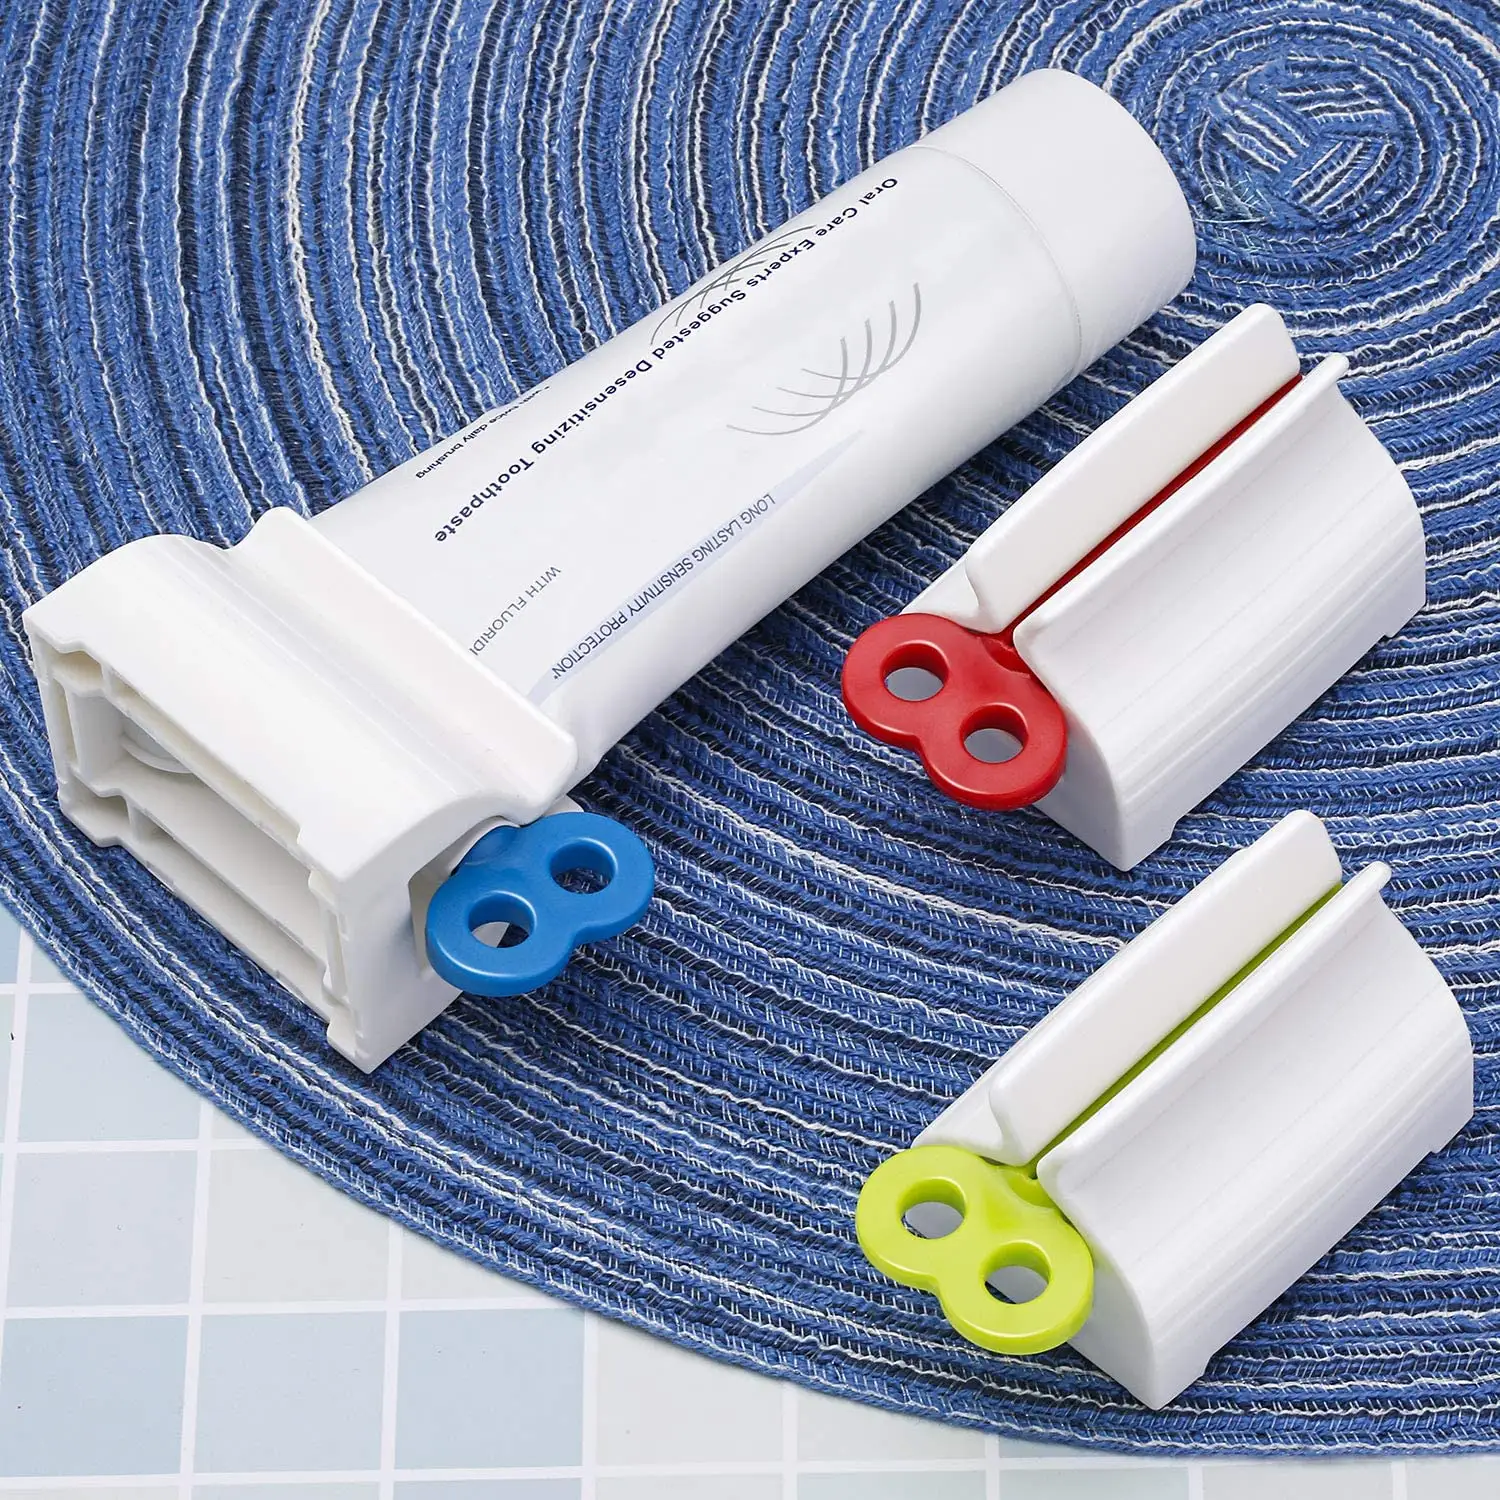 Exprimidor de pasta de dientes, enrollador de tubo económico, ahorra pasta de dientes, cremas, pintura y más pone fin a la basura